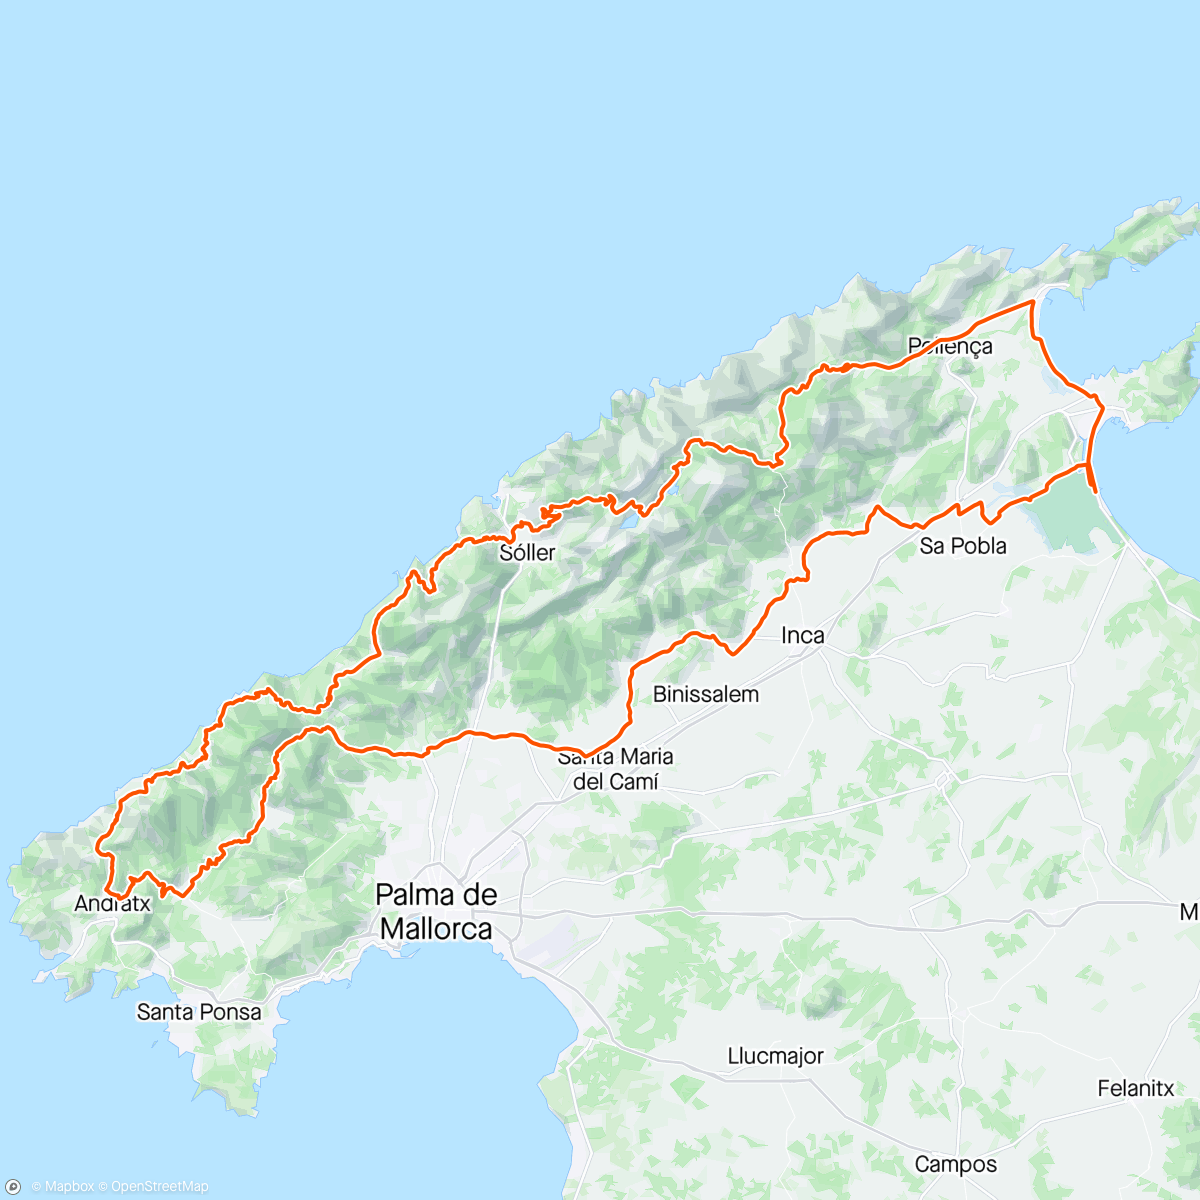 活动地图，Mallorca 313-225 km distansen.